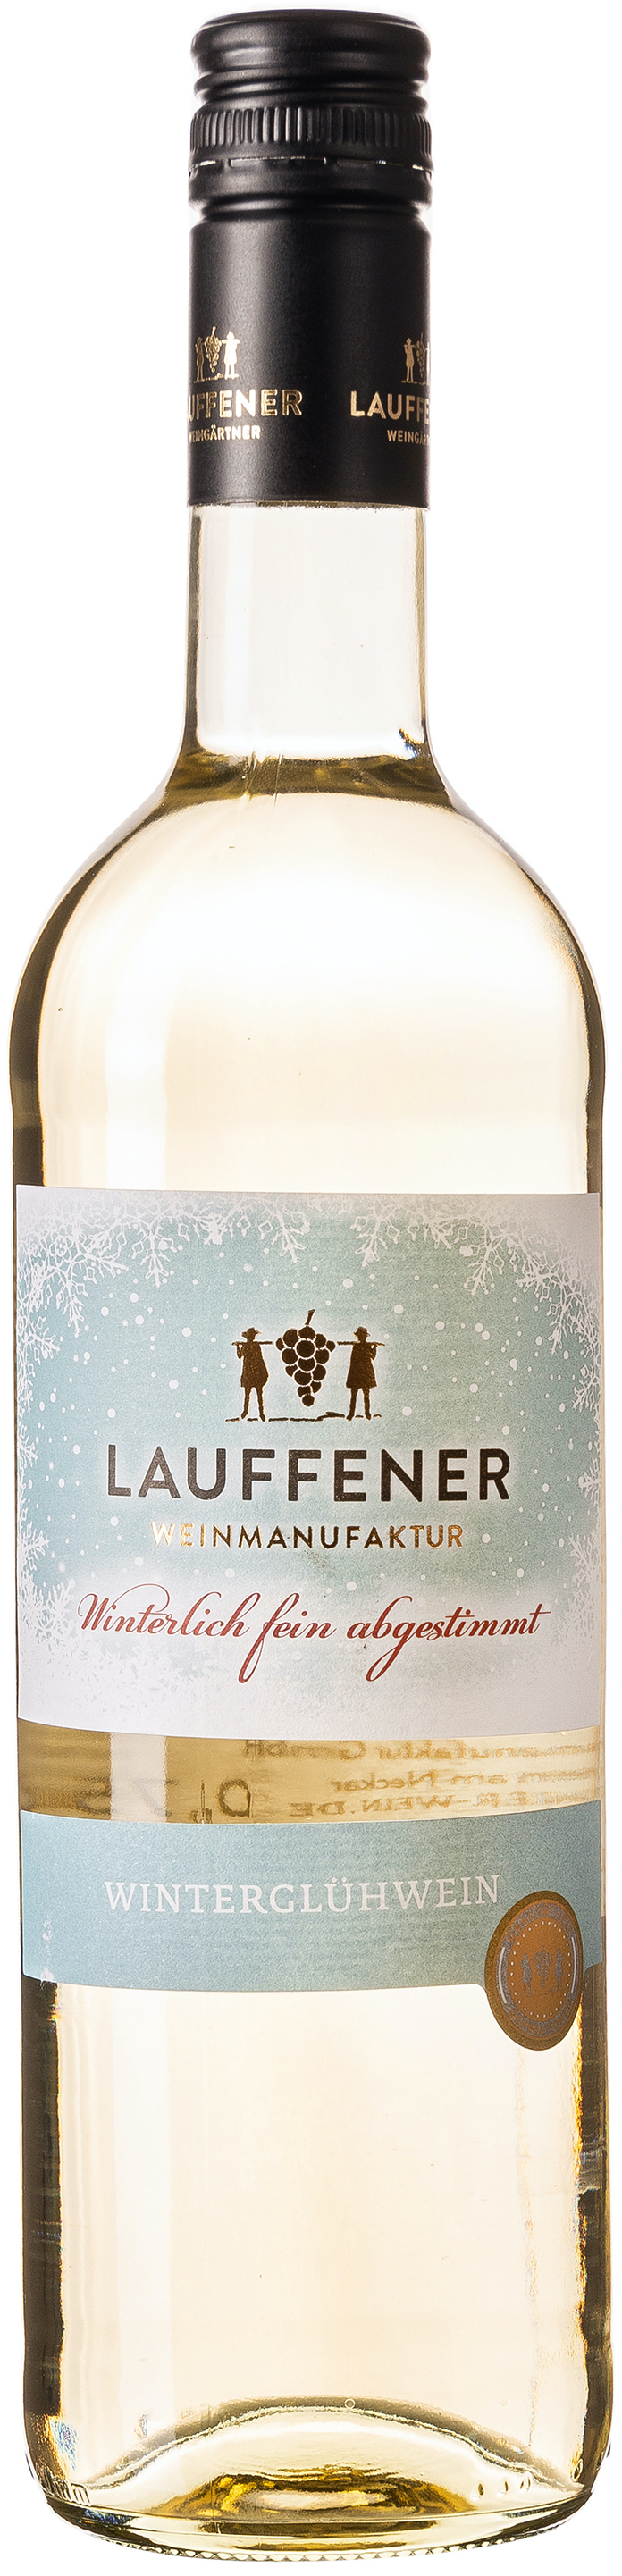 Lauffener Weingärtner Winterglühwein Weiss 10,5% vol. 0,75L 